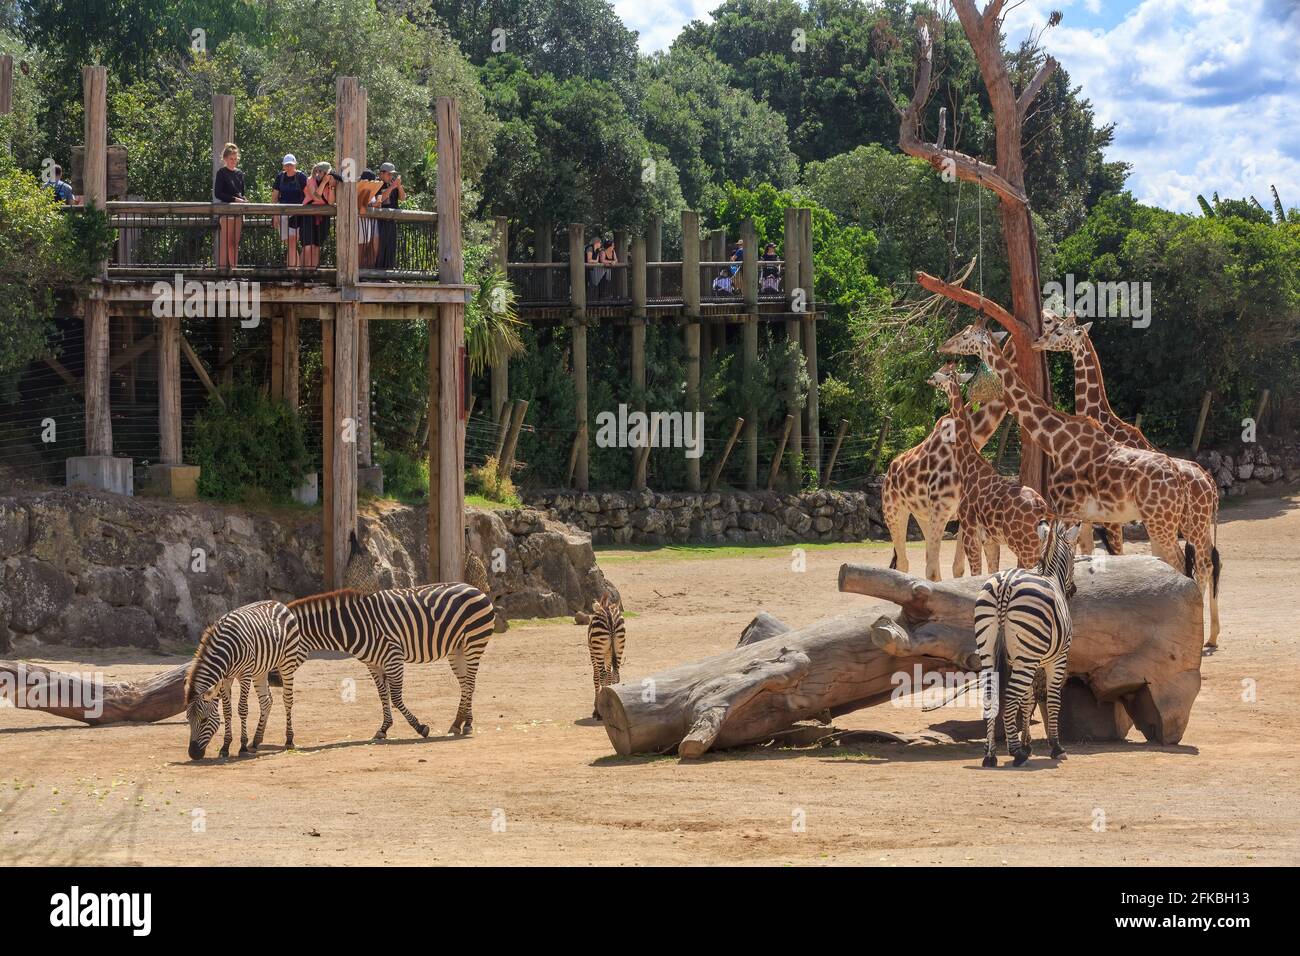 L'area 'Africa' in uno zoo. La gente sulle piattaforme sollevate guarda le zebre e le giraffe. Zoo di Auckland, Auckland, Nuova Zelanda Foto Stock